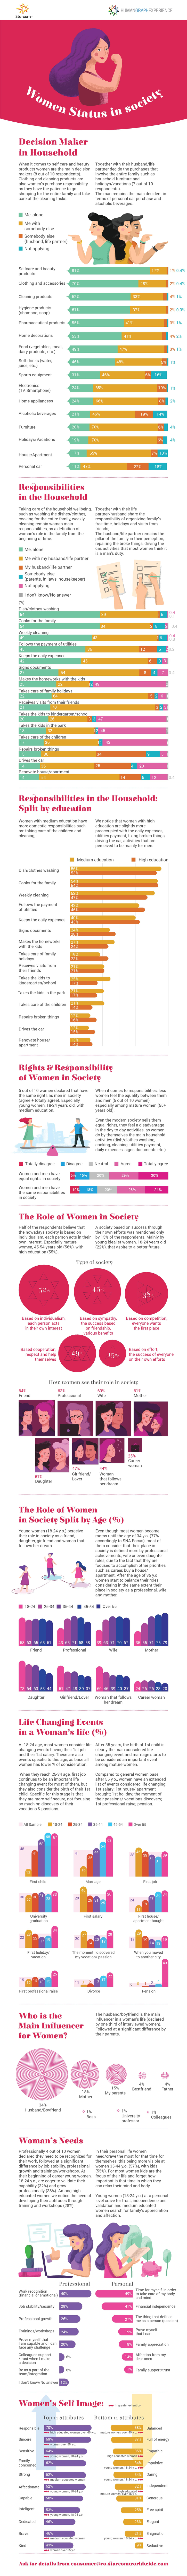 STUDIU: Cum își percep femeile rolul în societatea de astăzi